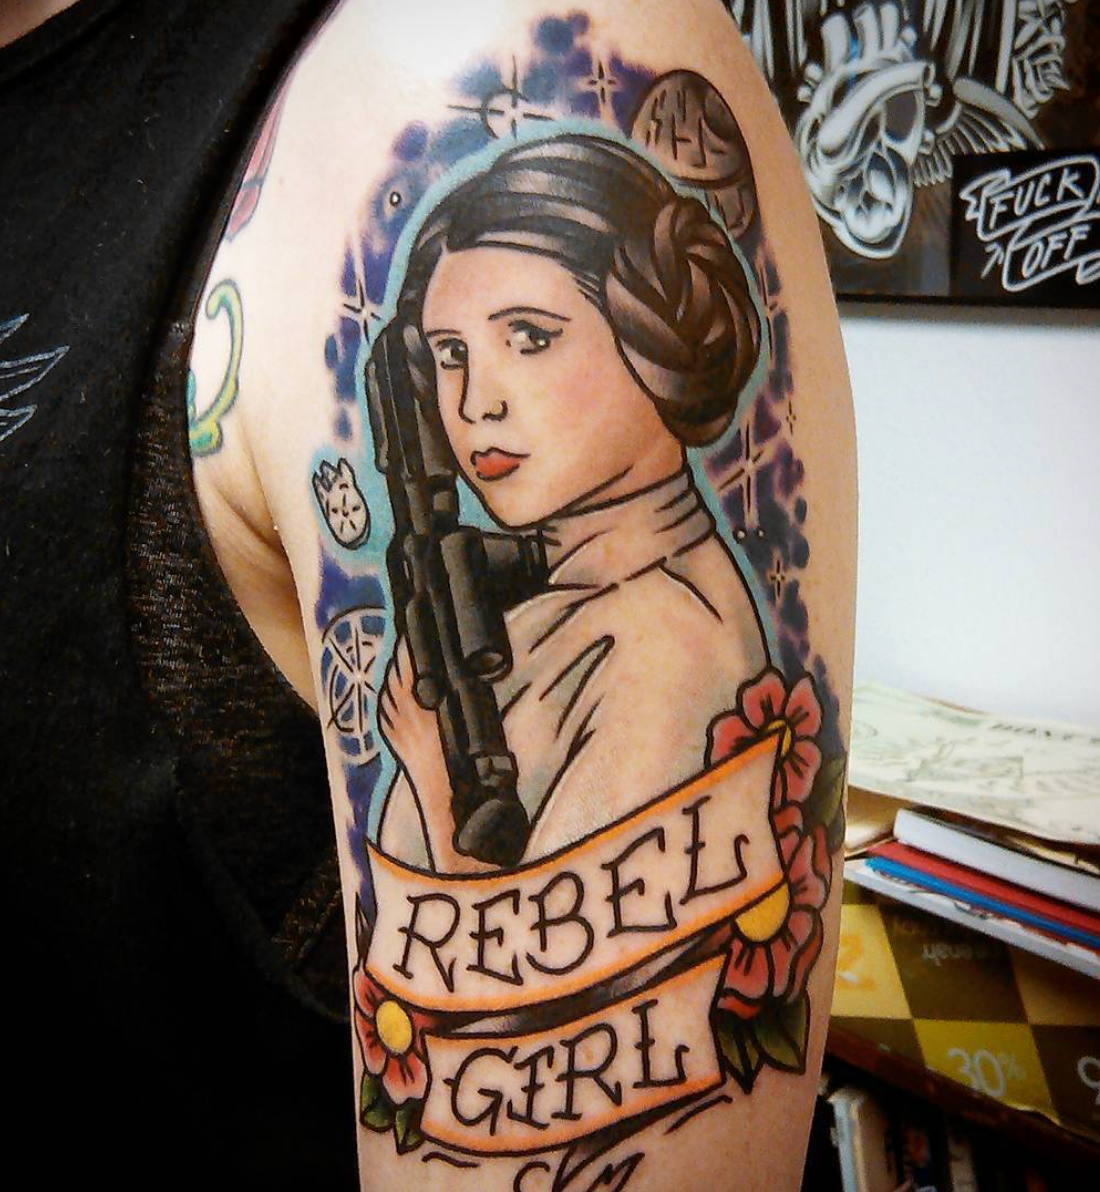 A tattoo featuring Princess Leia